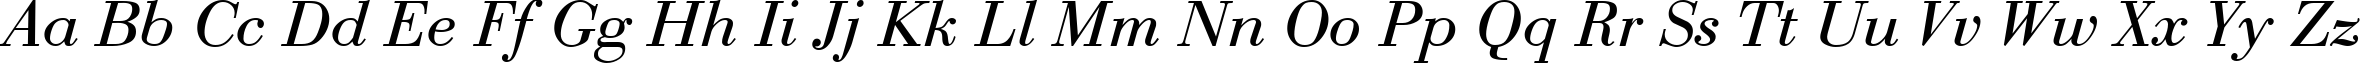 Пример написания английского алфавита шрифтом Bodoni Roman Italic